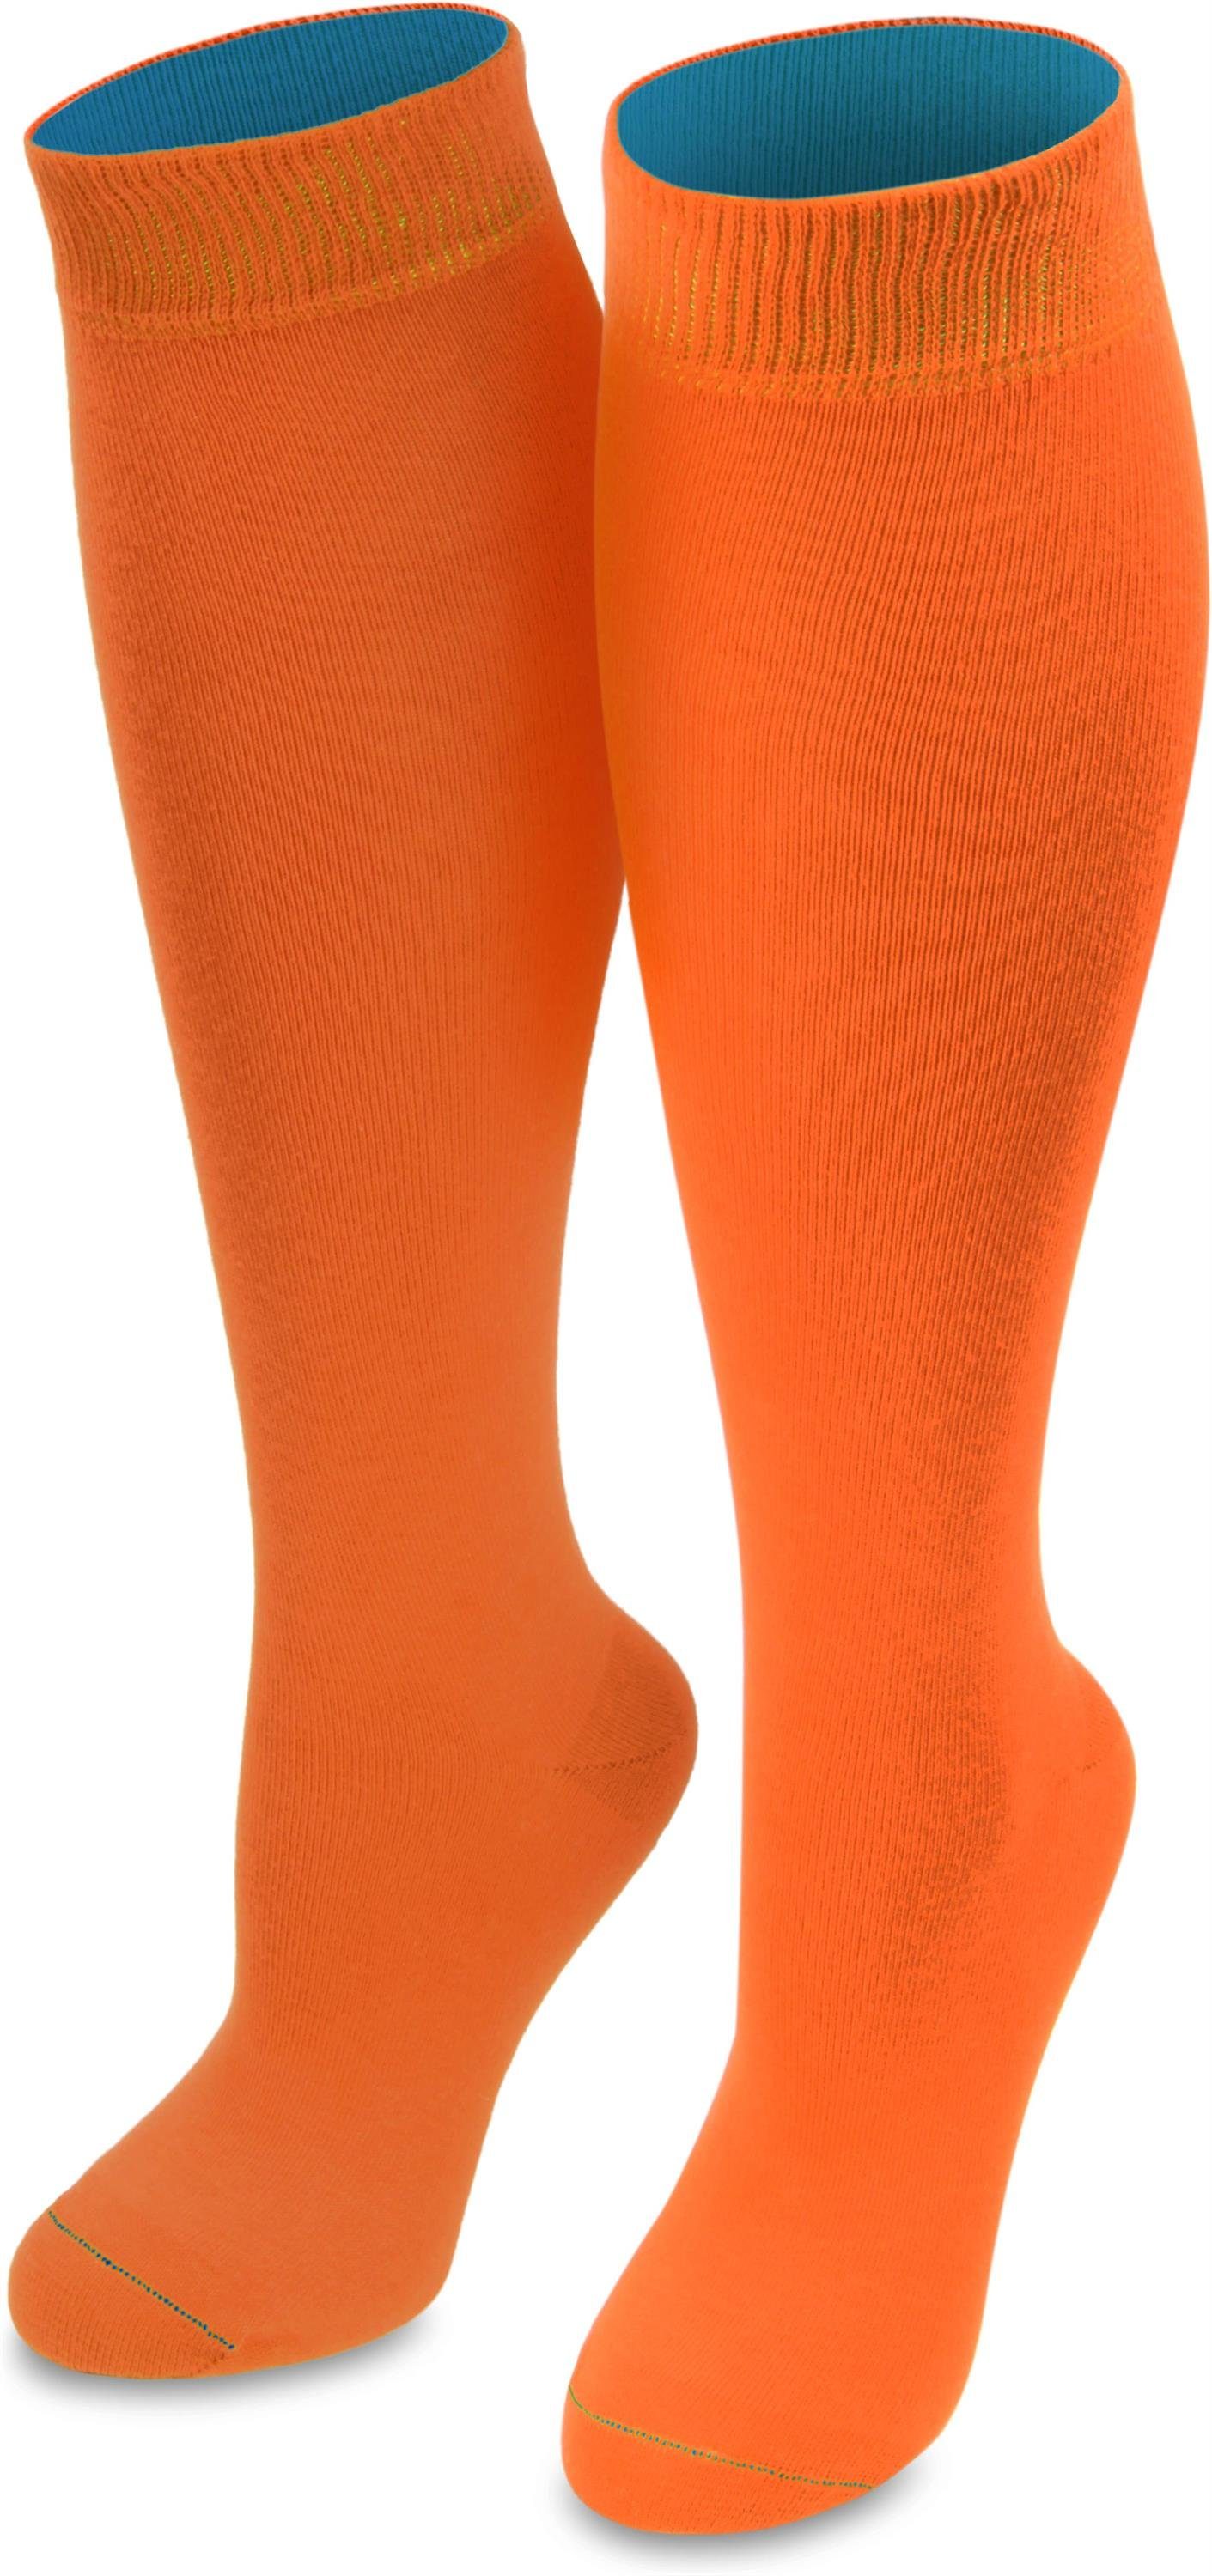 normani Kniestrümpfe 1 Paar Kniestrümpfe Bi-Color (1-Paar, 1 Paar) farbig abgesetzter Bund Orange/Türkis